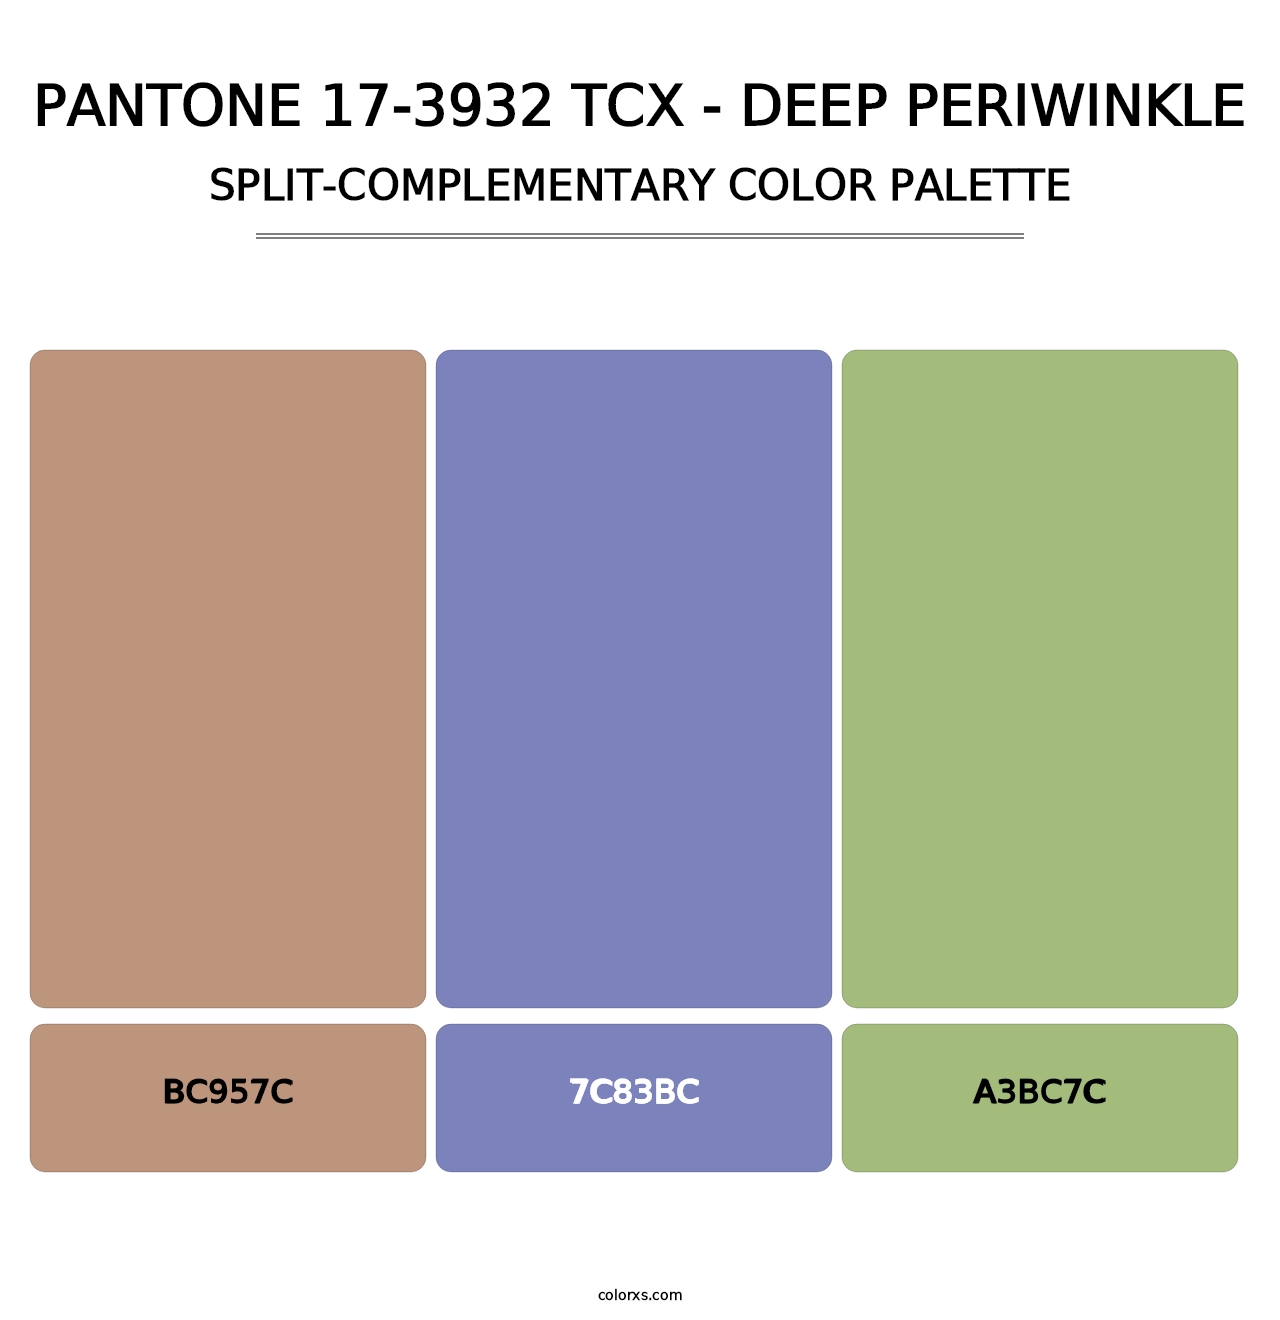 PANTONE 17-3932 TCX - Deep Periwinkle - Split-Complementary Color Palette